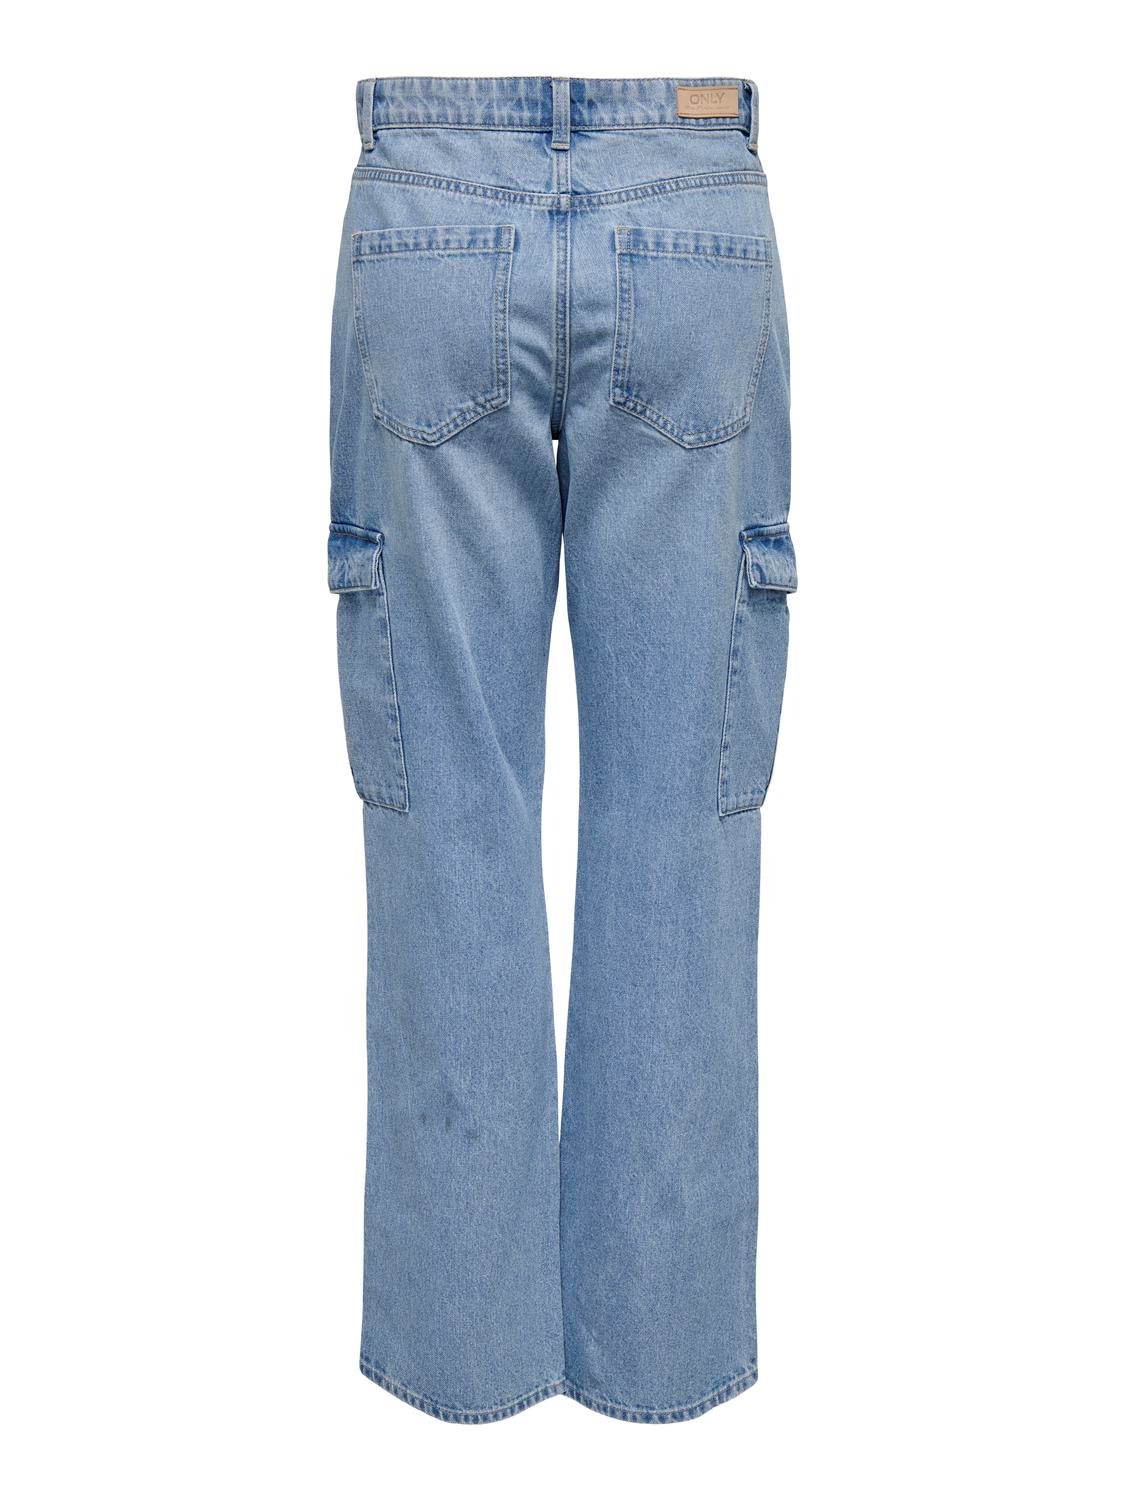 ONLY ONLRiley High Waist Straight Cargo Jeans -Light Blue Denim - 15317190